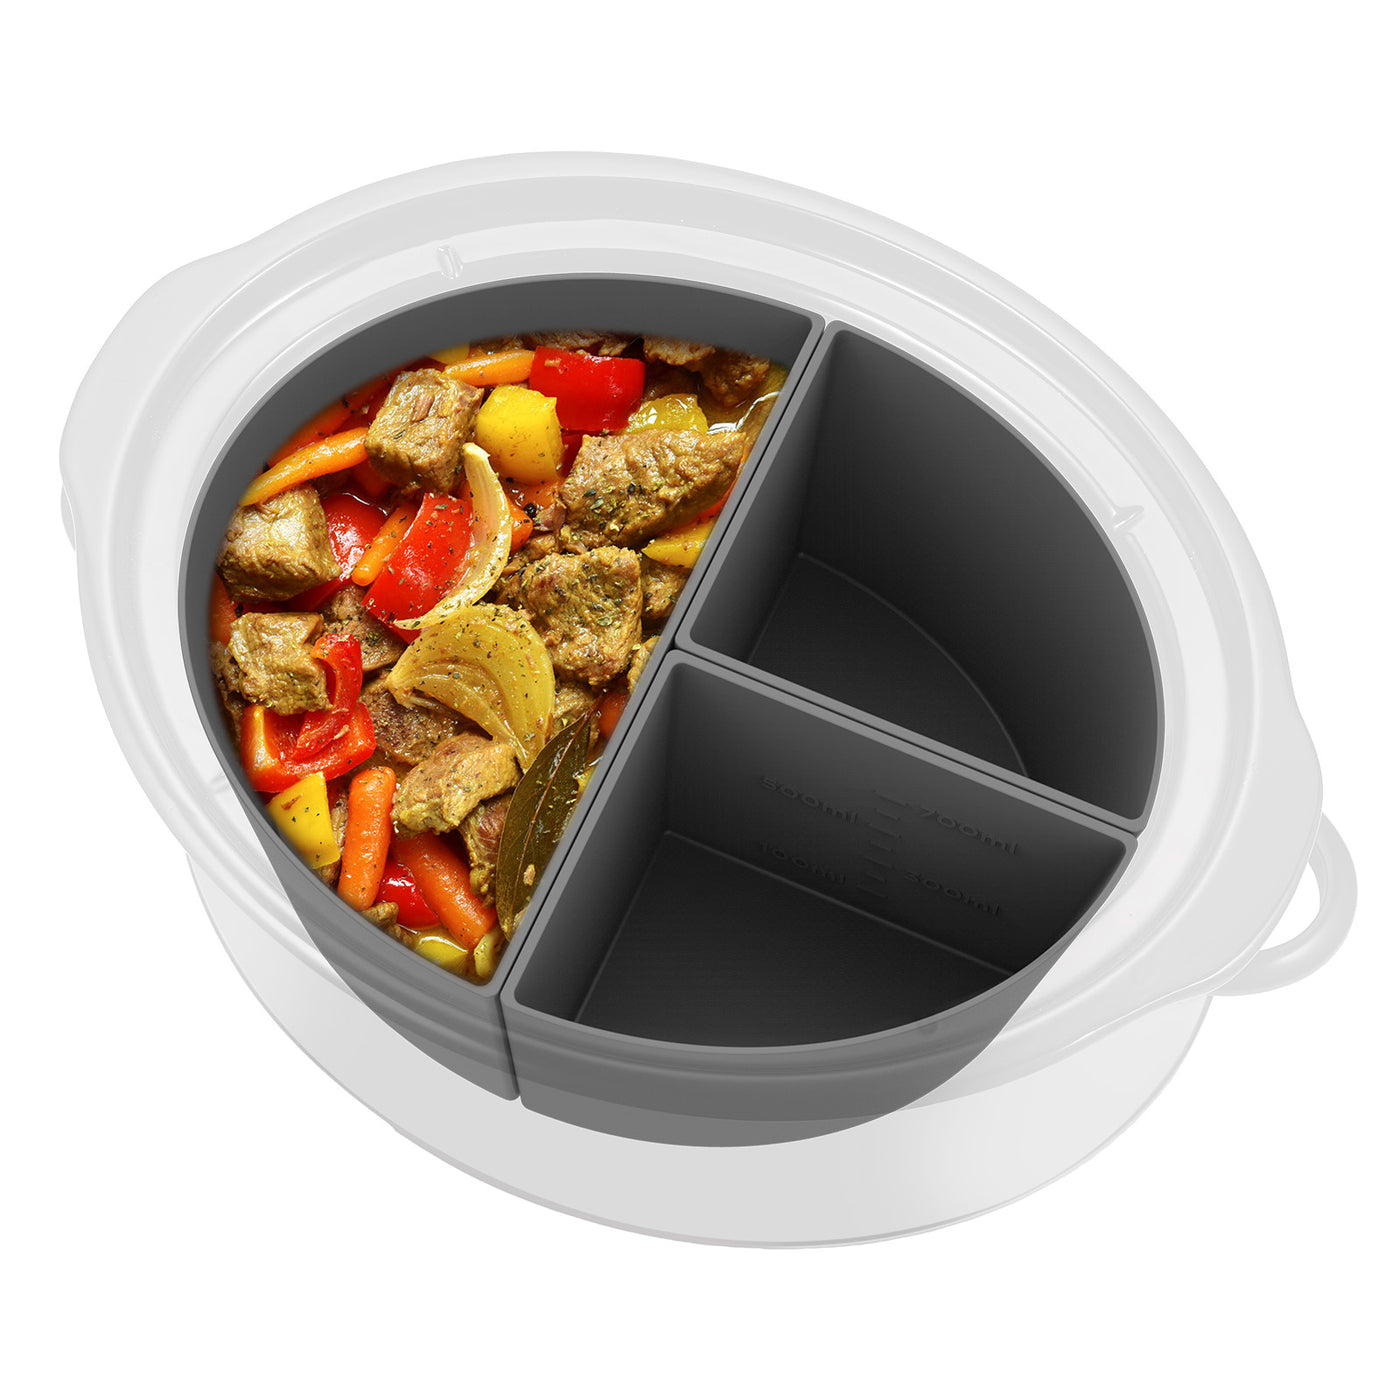 Rocyis silicone crock pot liner-crockpot divider insert fit 6-8 quarts,  reusable slow cooker silicone liner, foldable&dishwasher saf